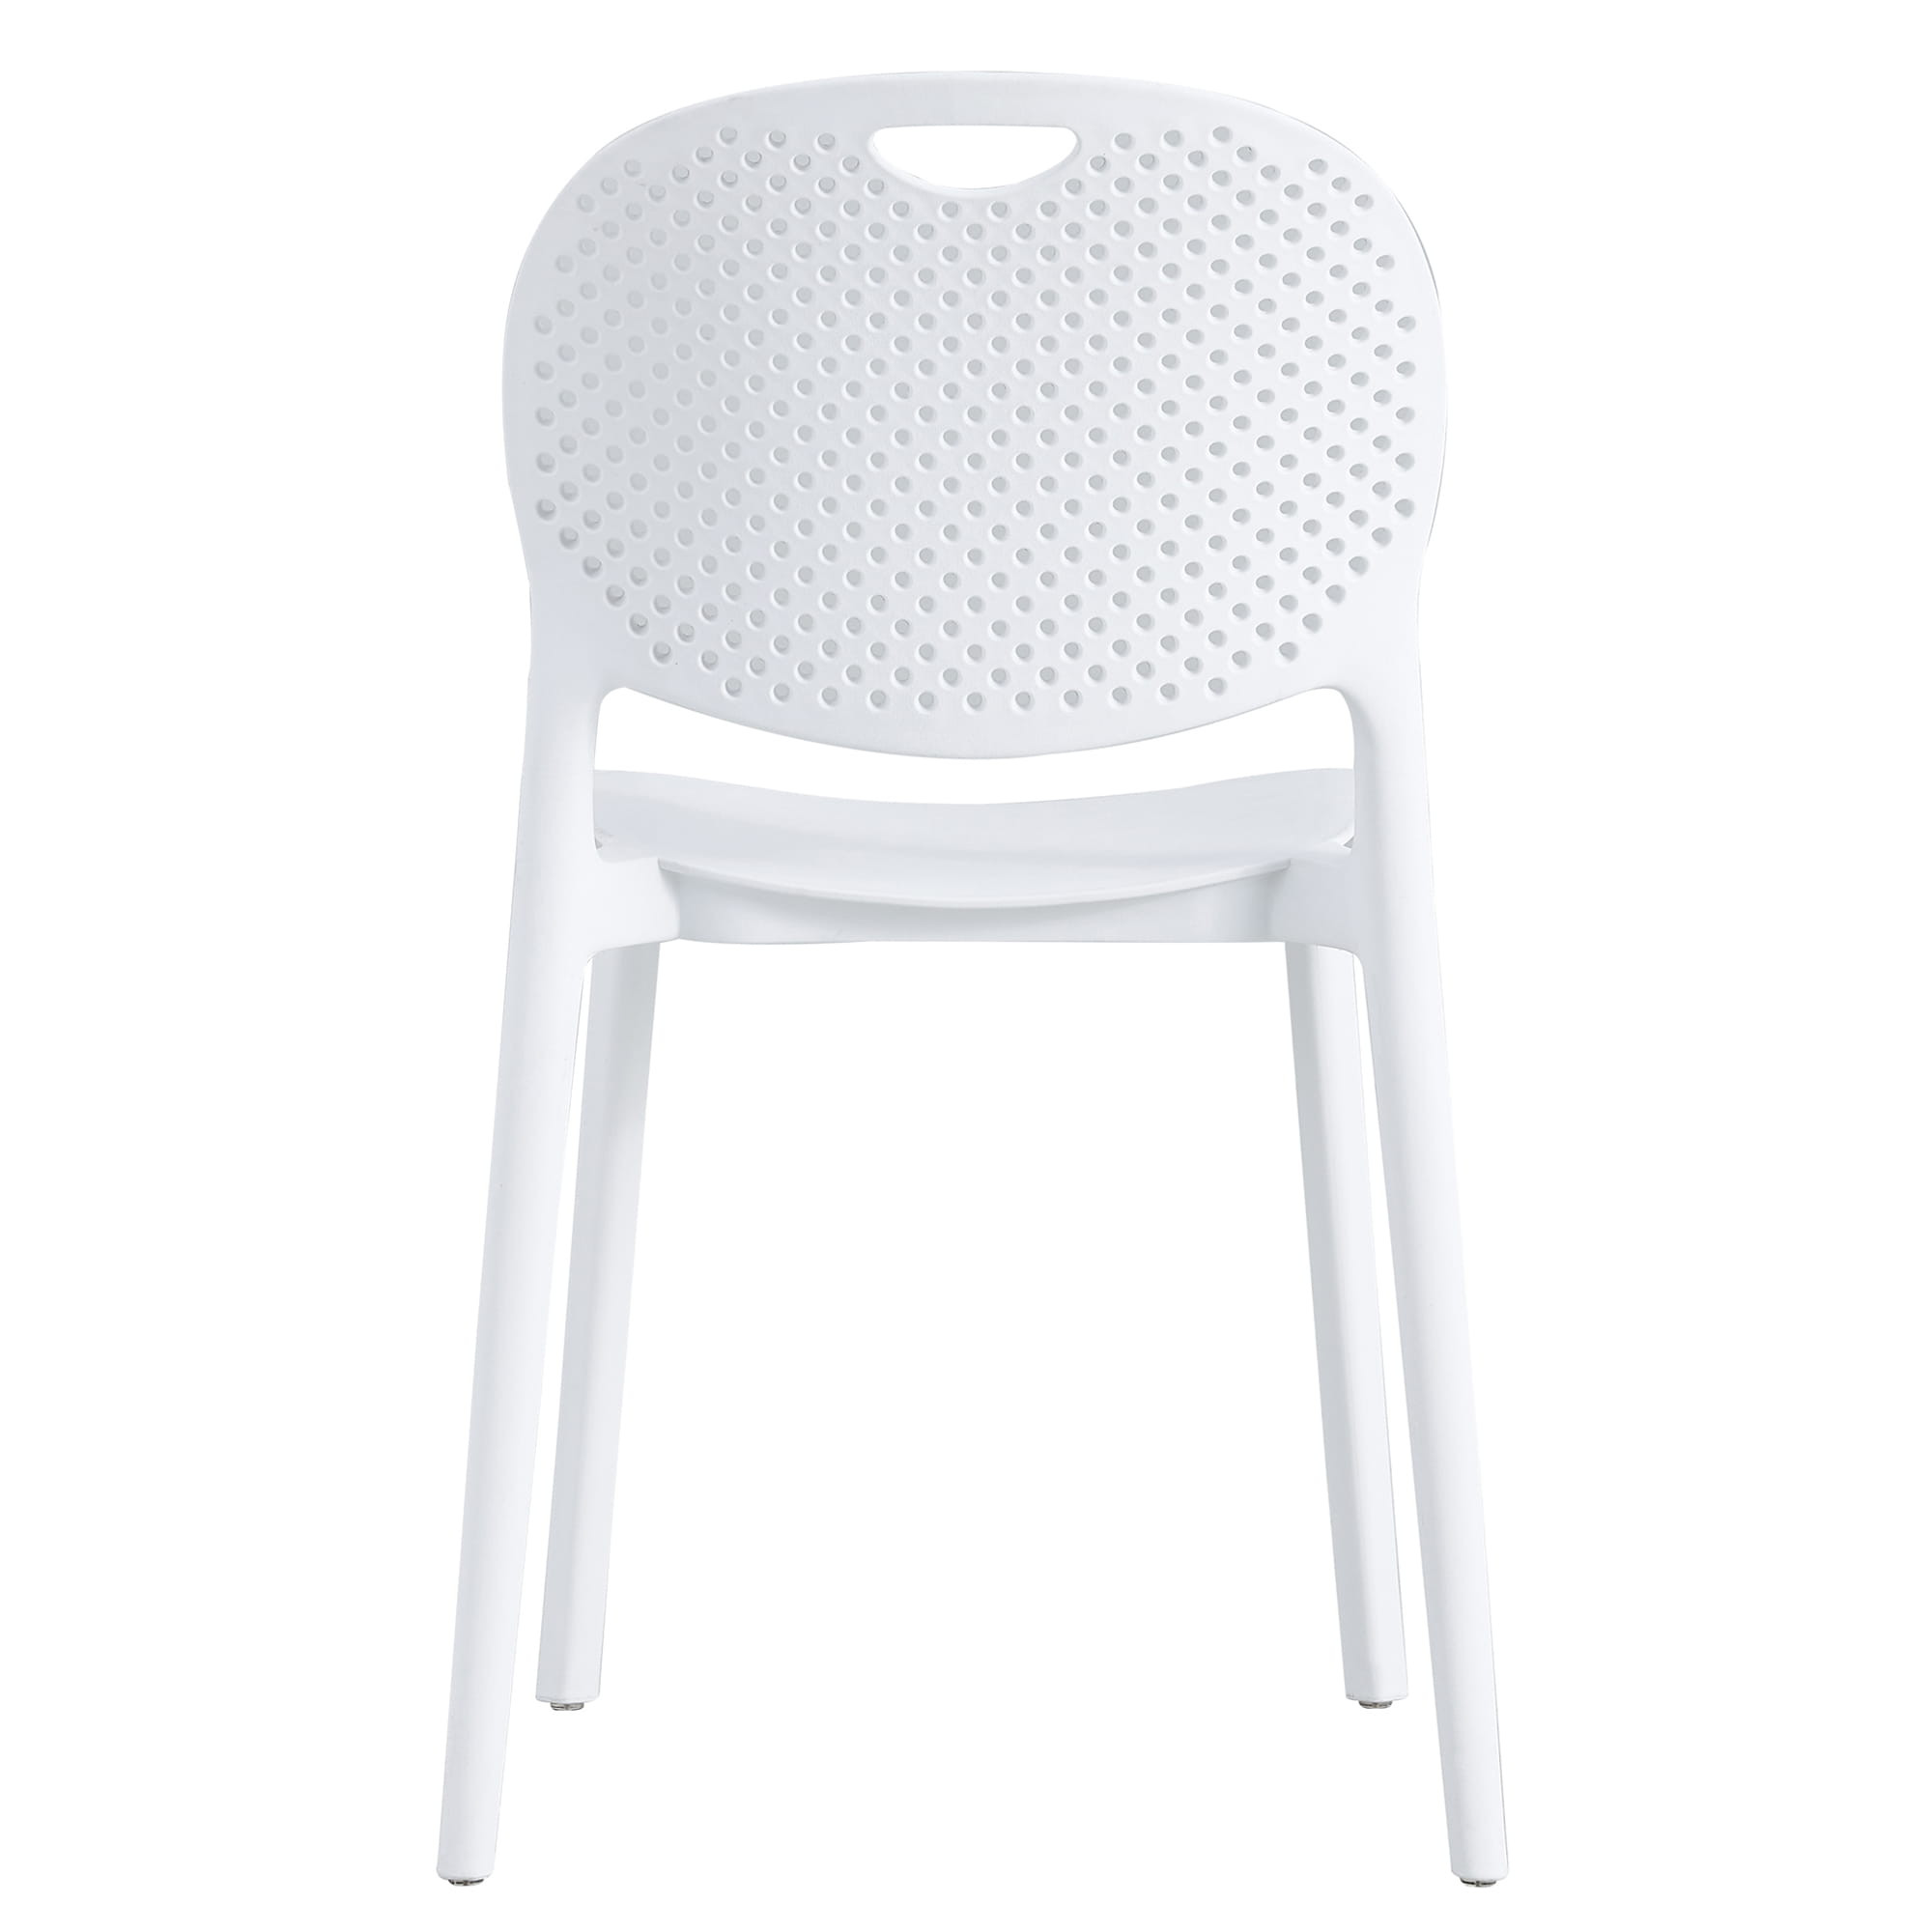 Set čtyř židlí LUMA bílé (4ks)